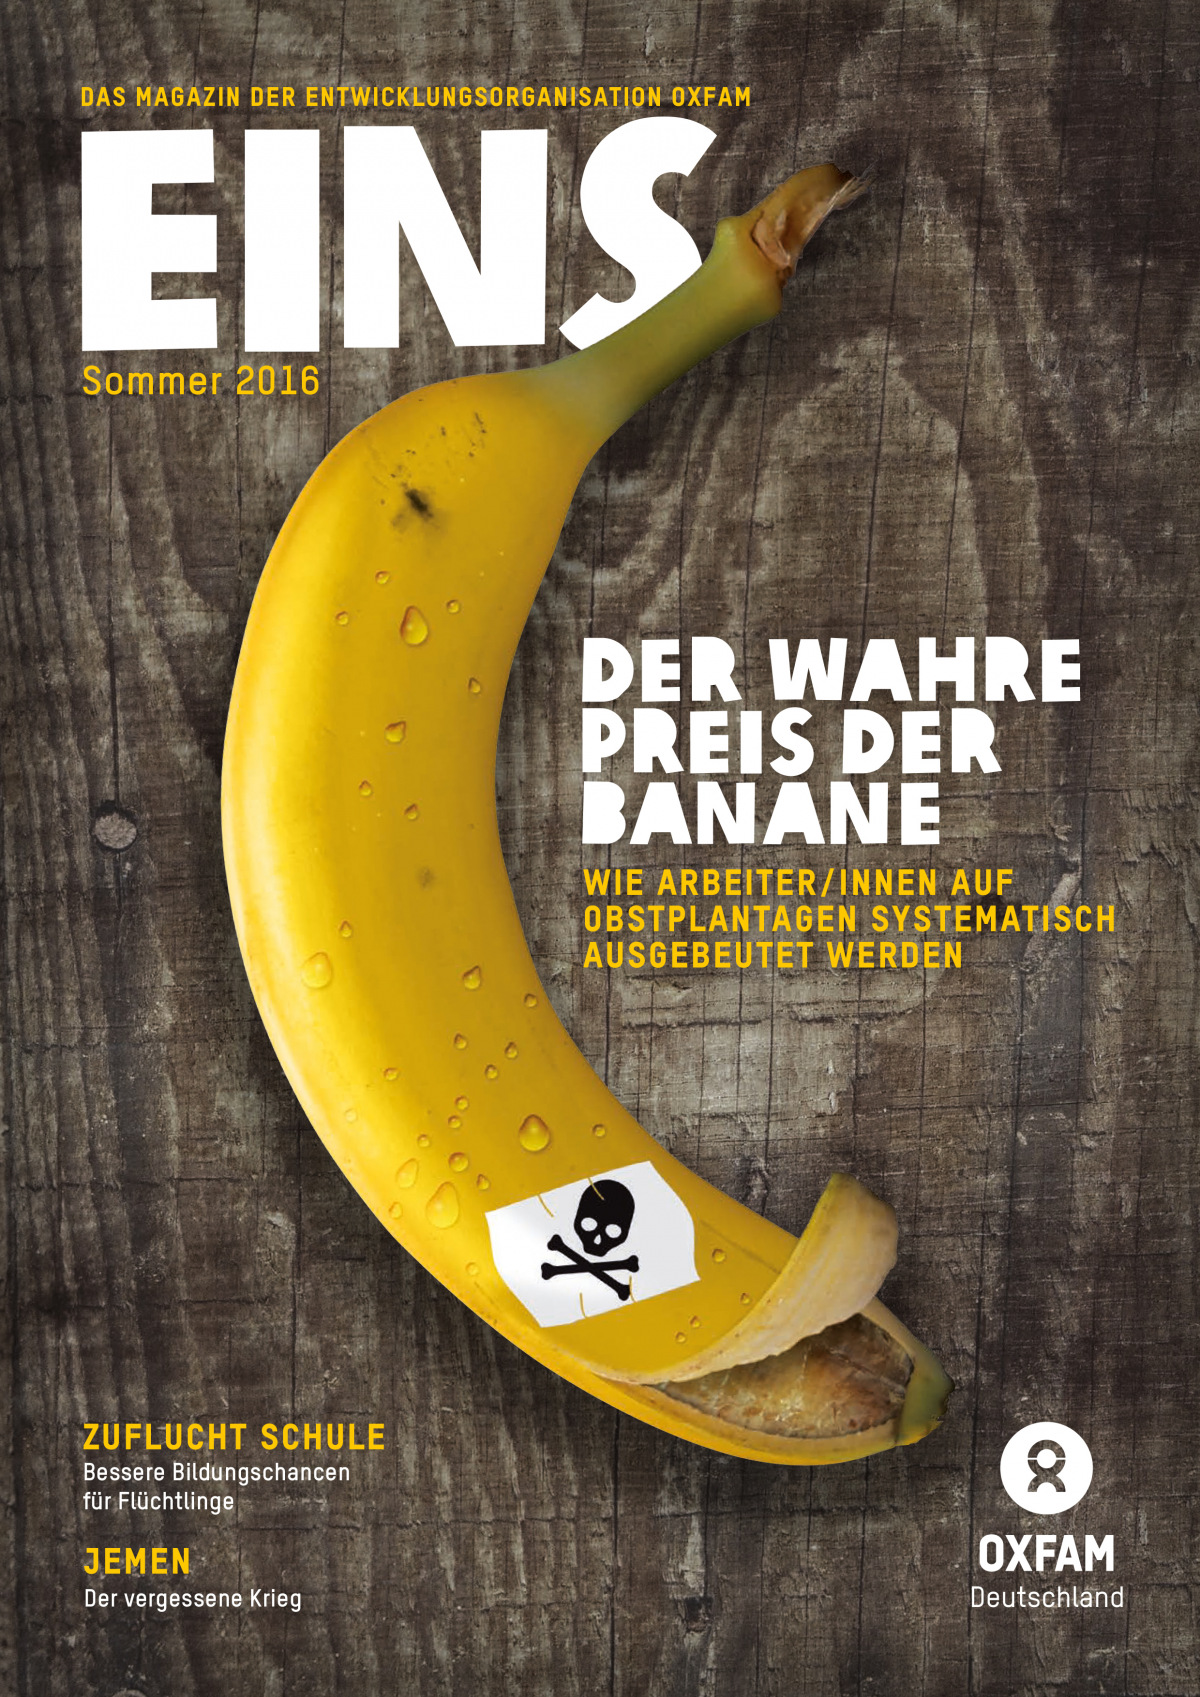 Titelbild vom Oxfam-Magazin EINS (Sommer 2016)